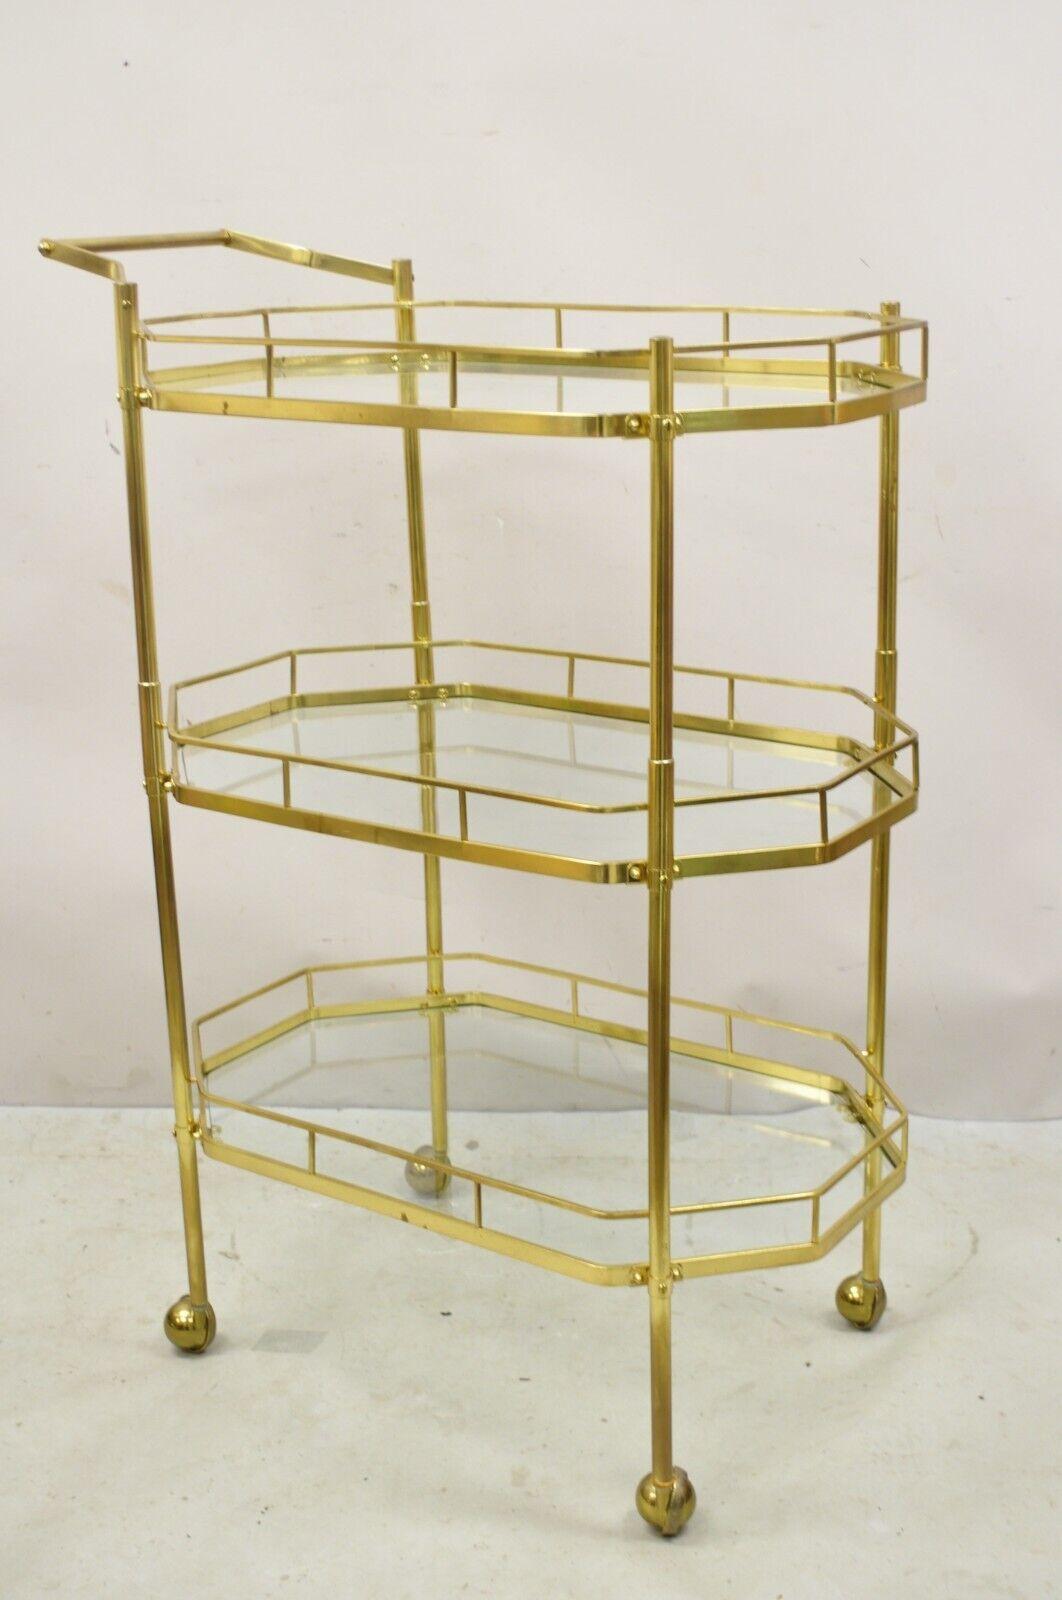 Mid Century Italian Modern Brass and Glass 3 Tier Rolling Bar Cart Serving Table. Der Artikel verfügt über eine  sehr seltenes 3-stufiges Gestell, rollende Rollen, großer Stil und Form. Circa Mitte des 20. Jahrhunderts. Abmessungen: 46